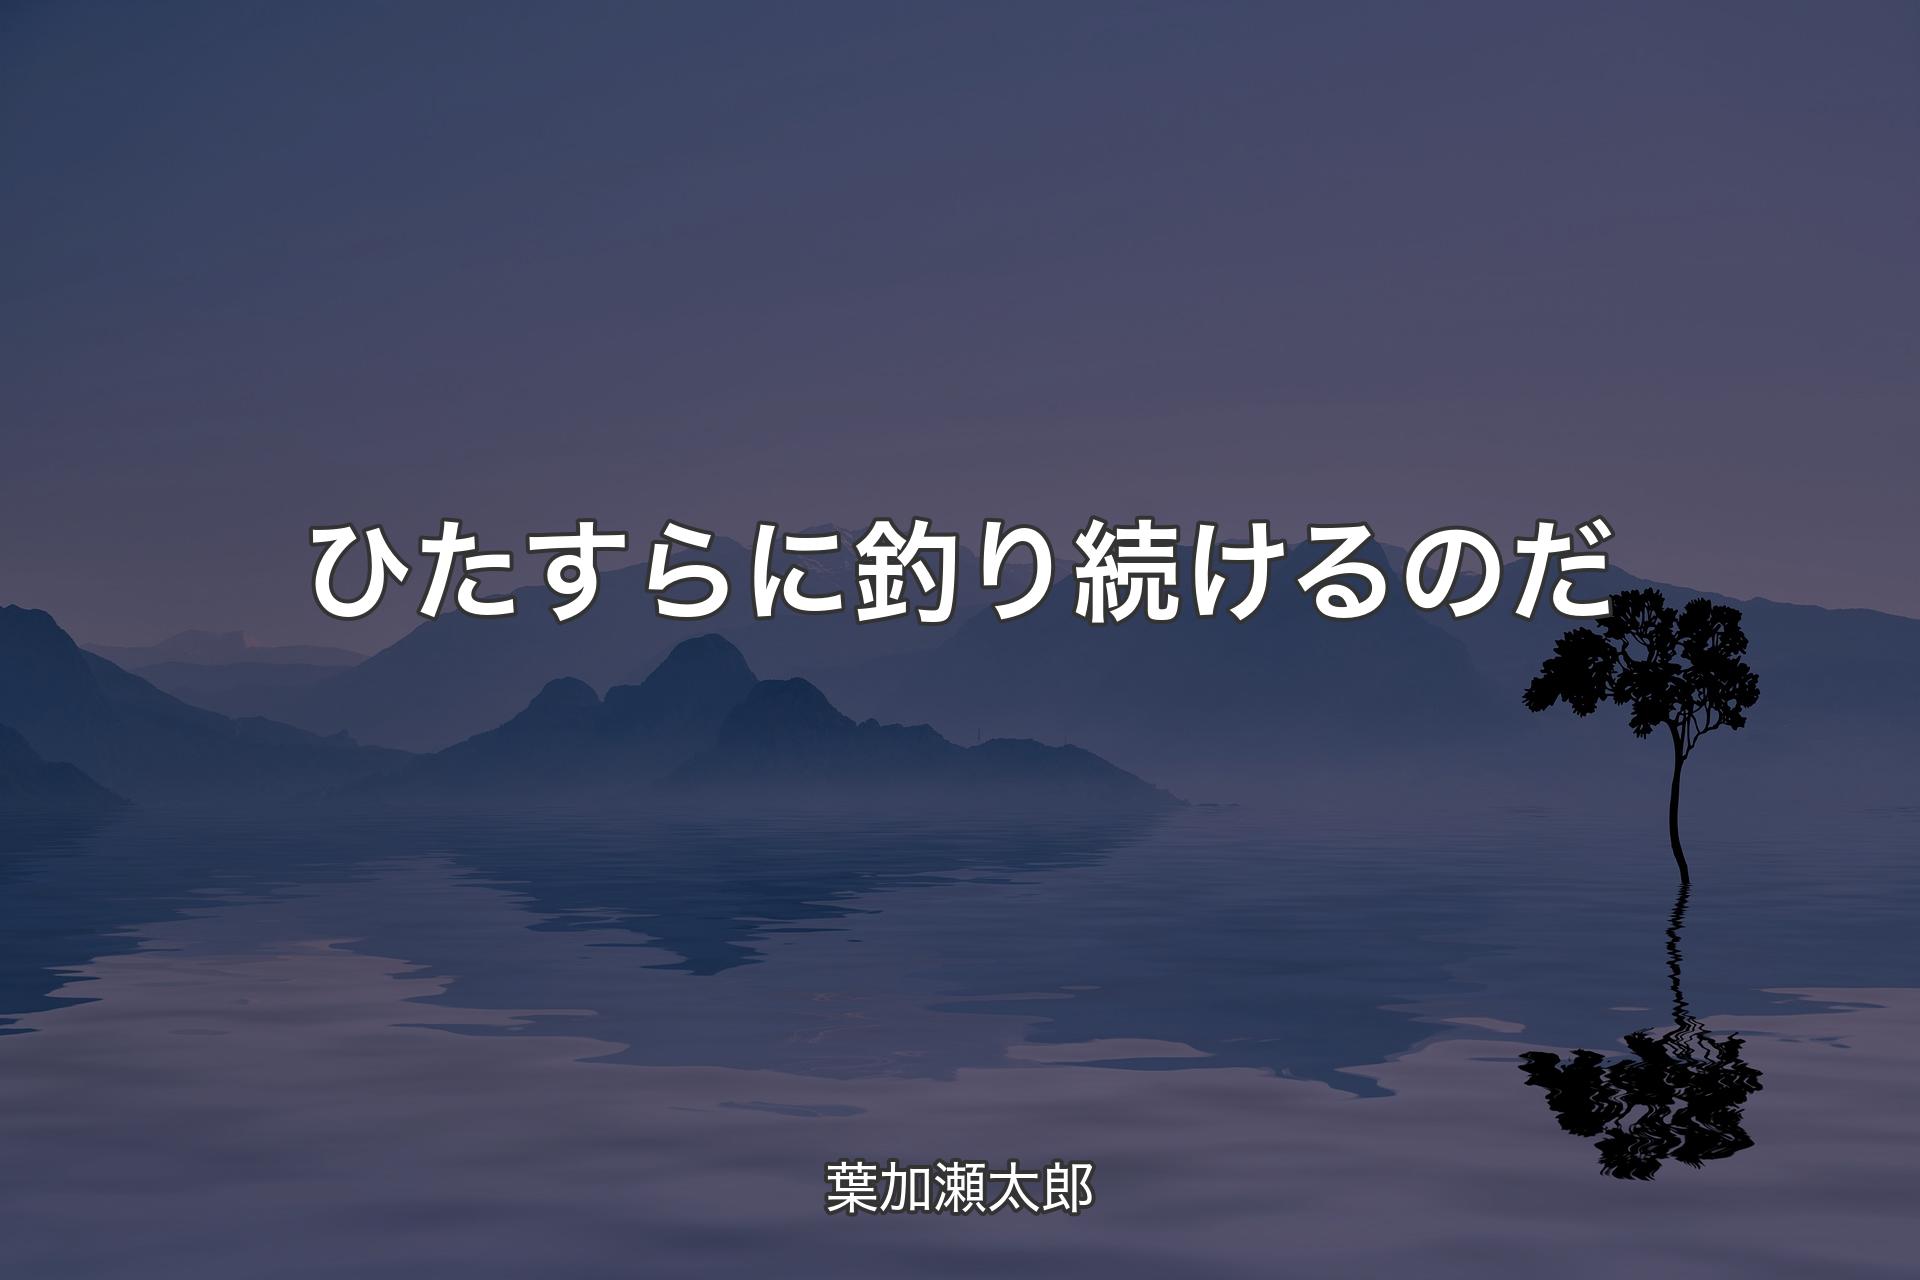 【背景4】ひたすらに釣り続けるのだ - 葉加瀬太郎